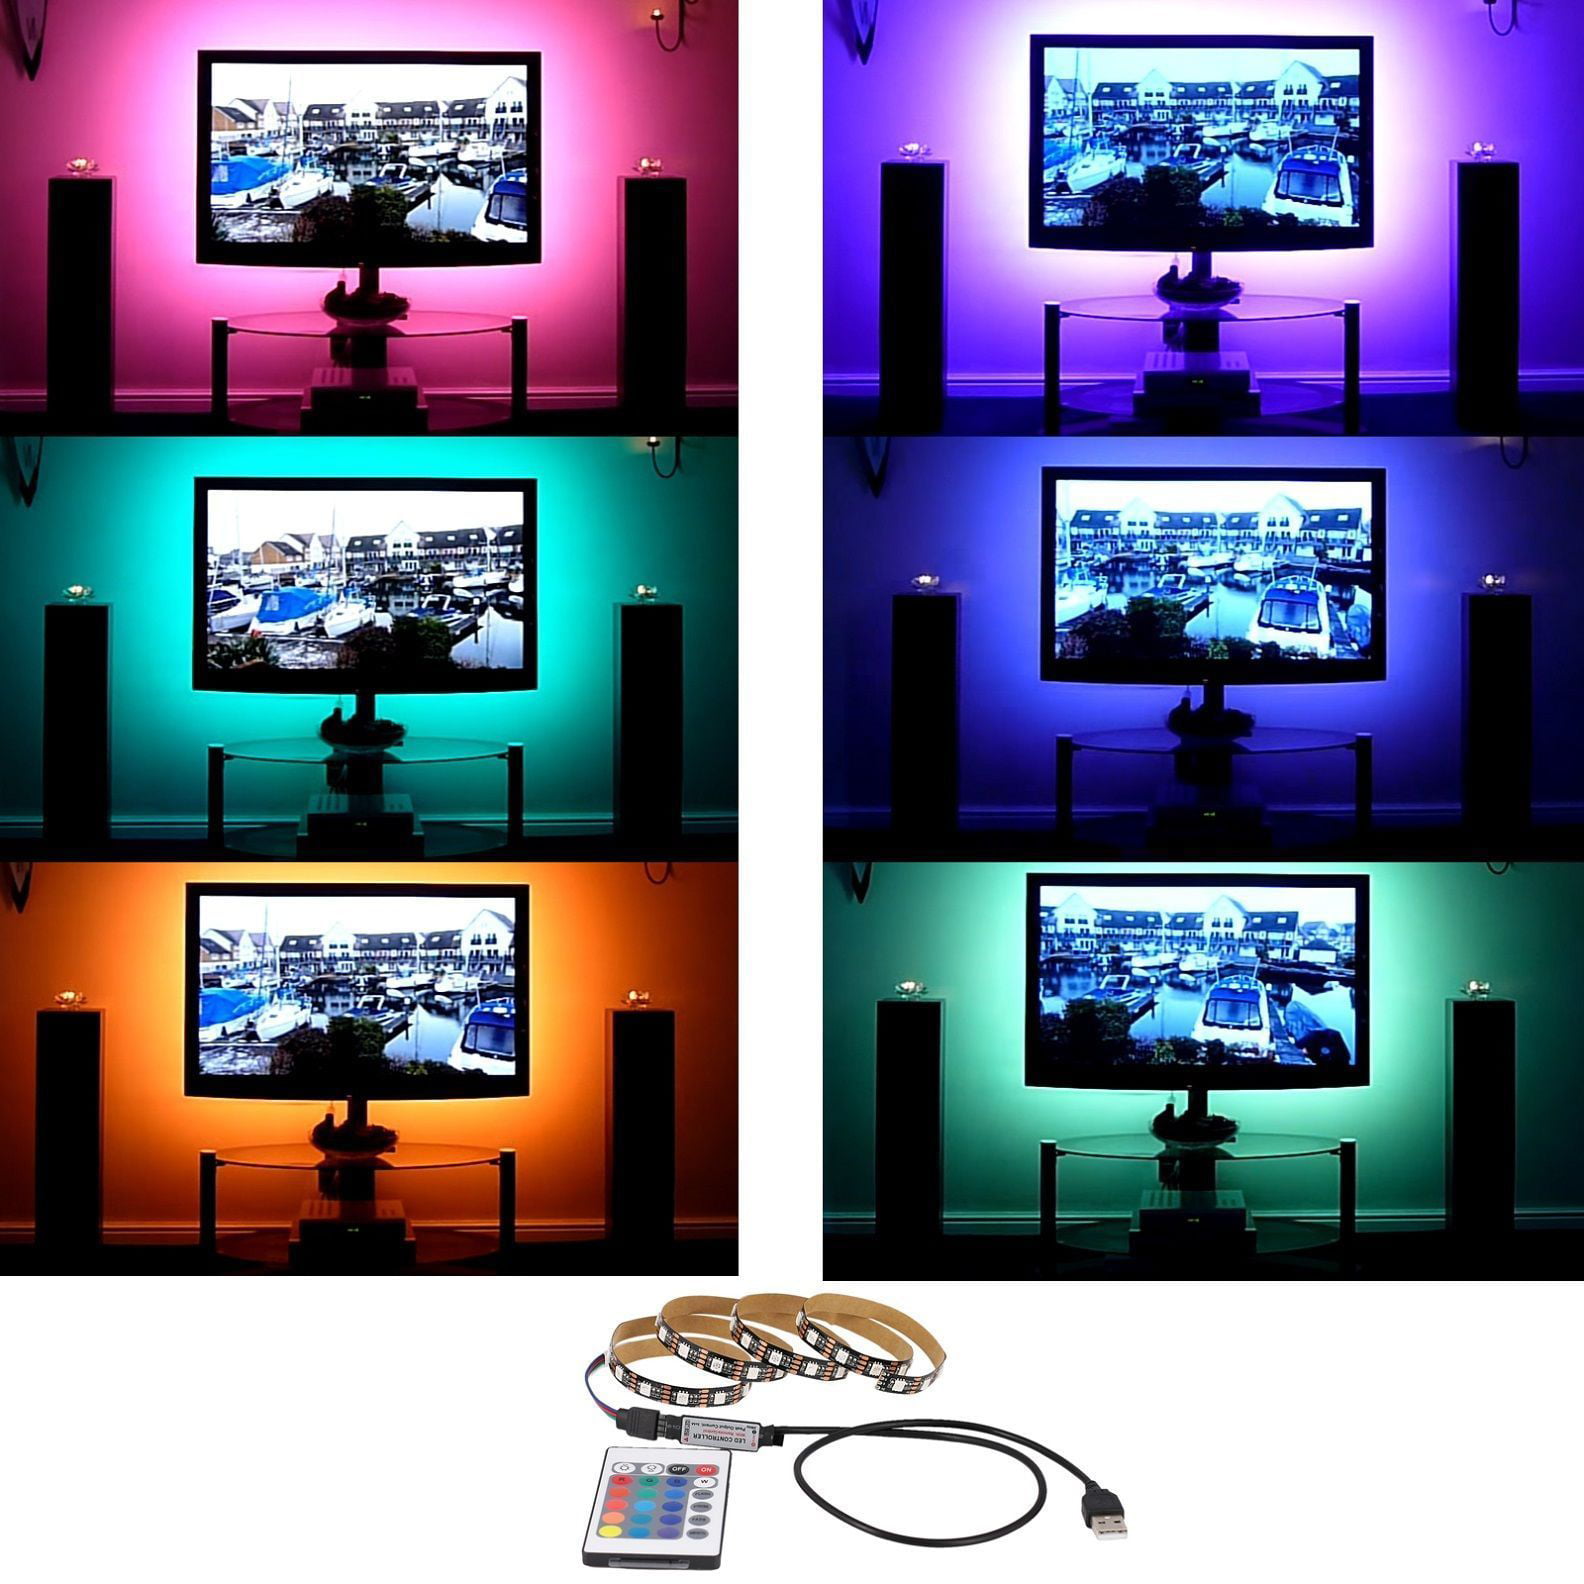 USB 5V 5050 60LED//M RGB LED Strip Light TV Back Lighting Kit 24 Key IR Remote